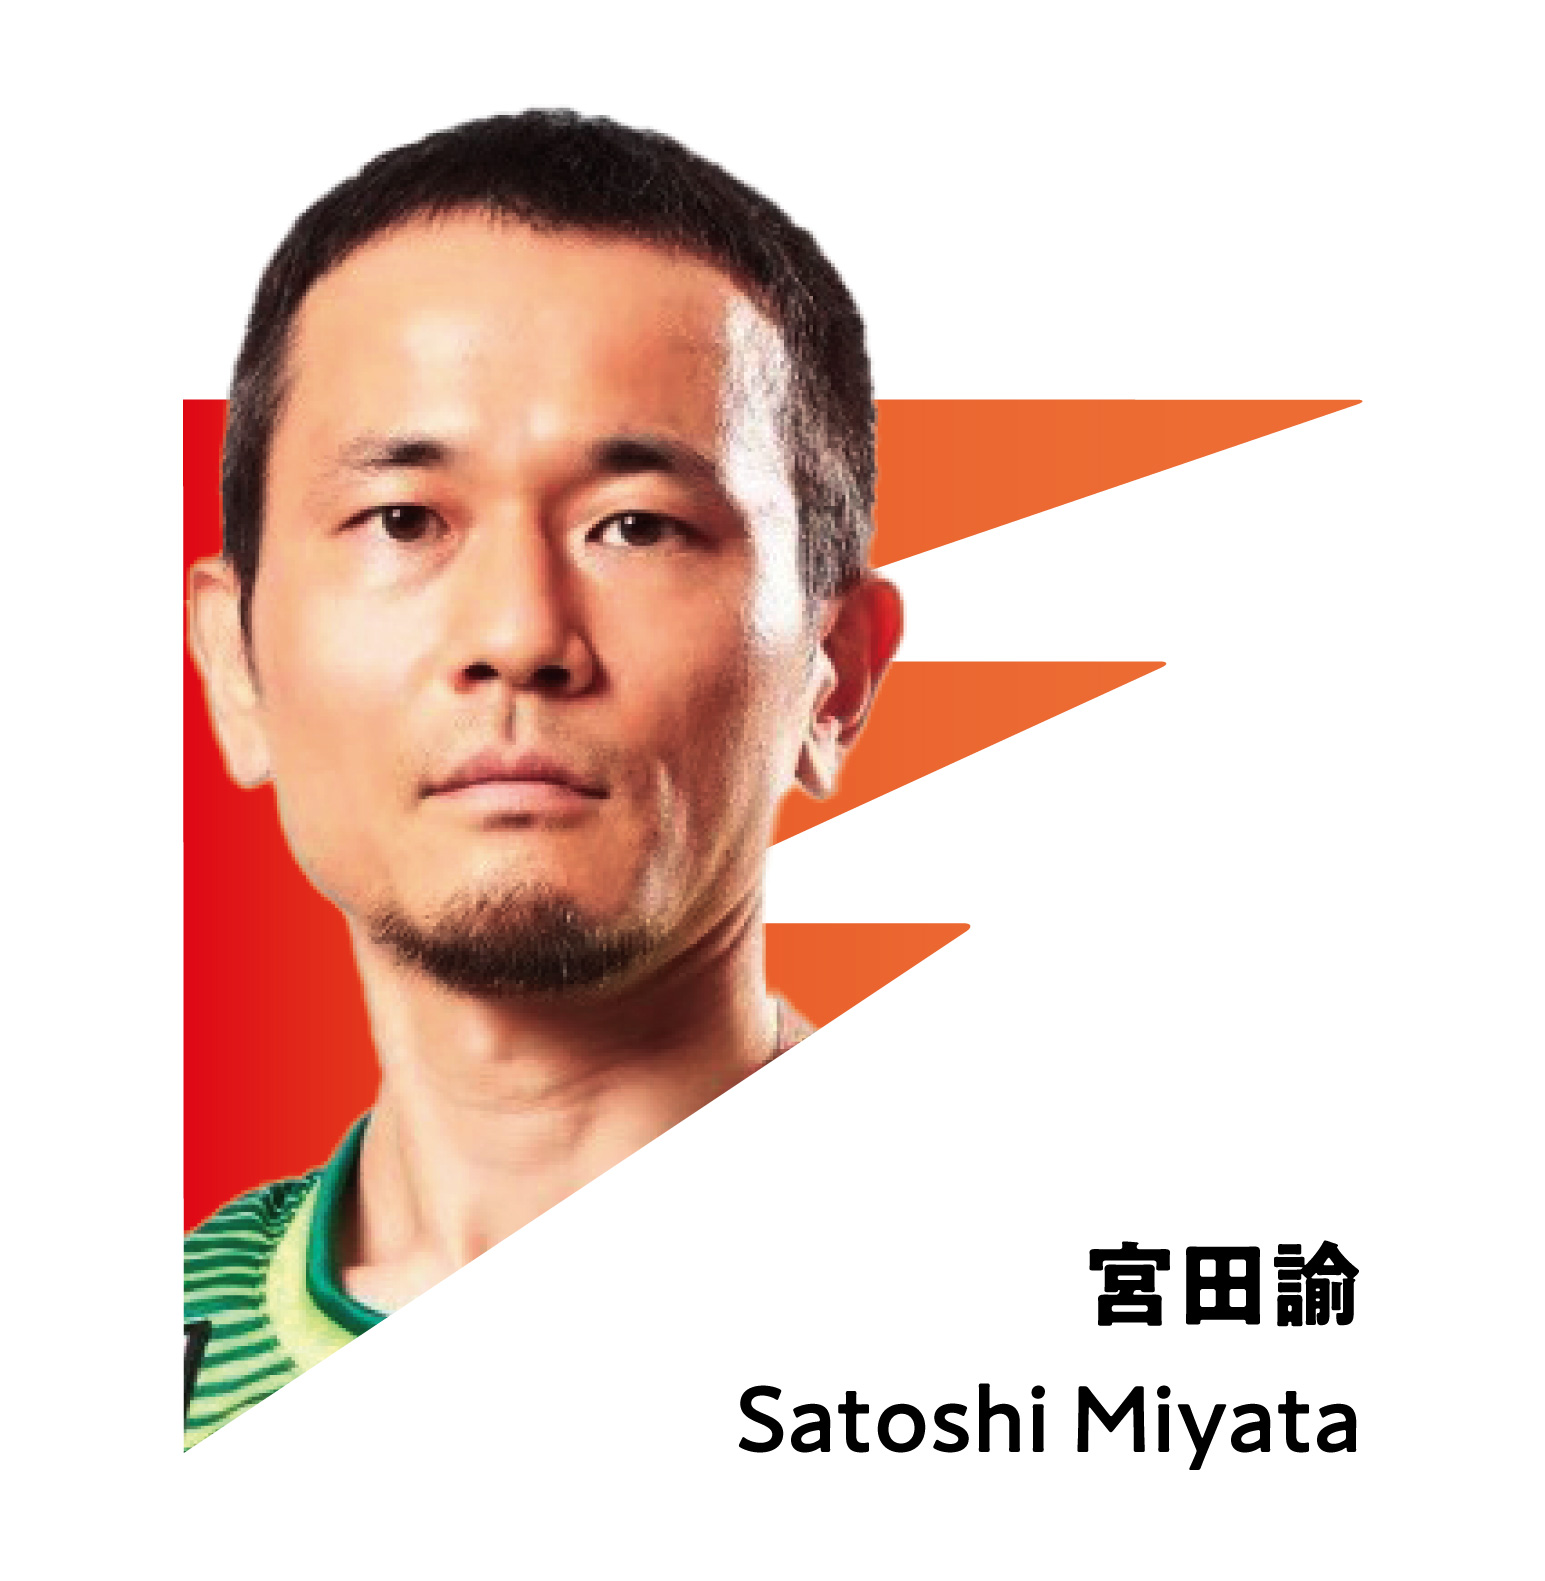 SATOSHI MIYATA